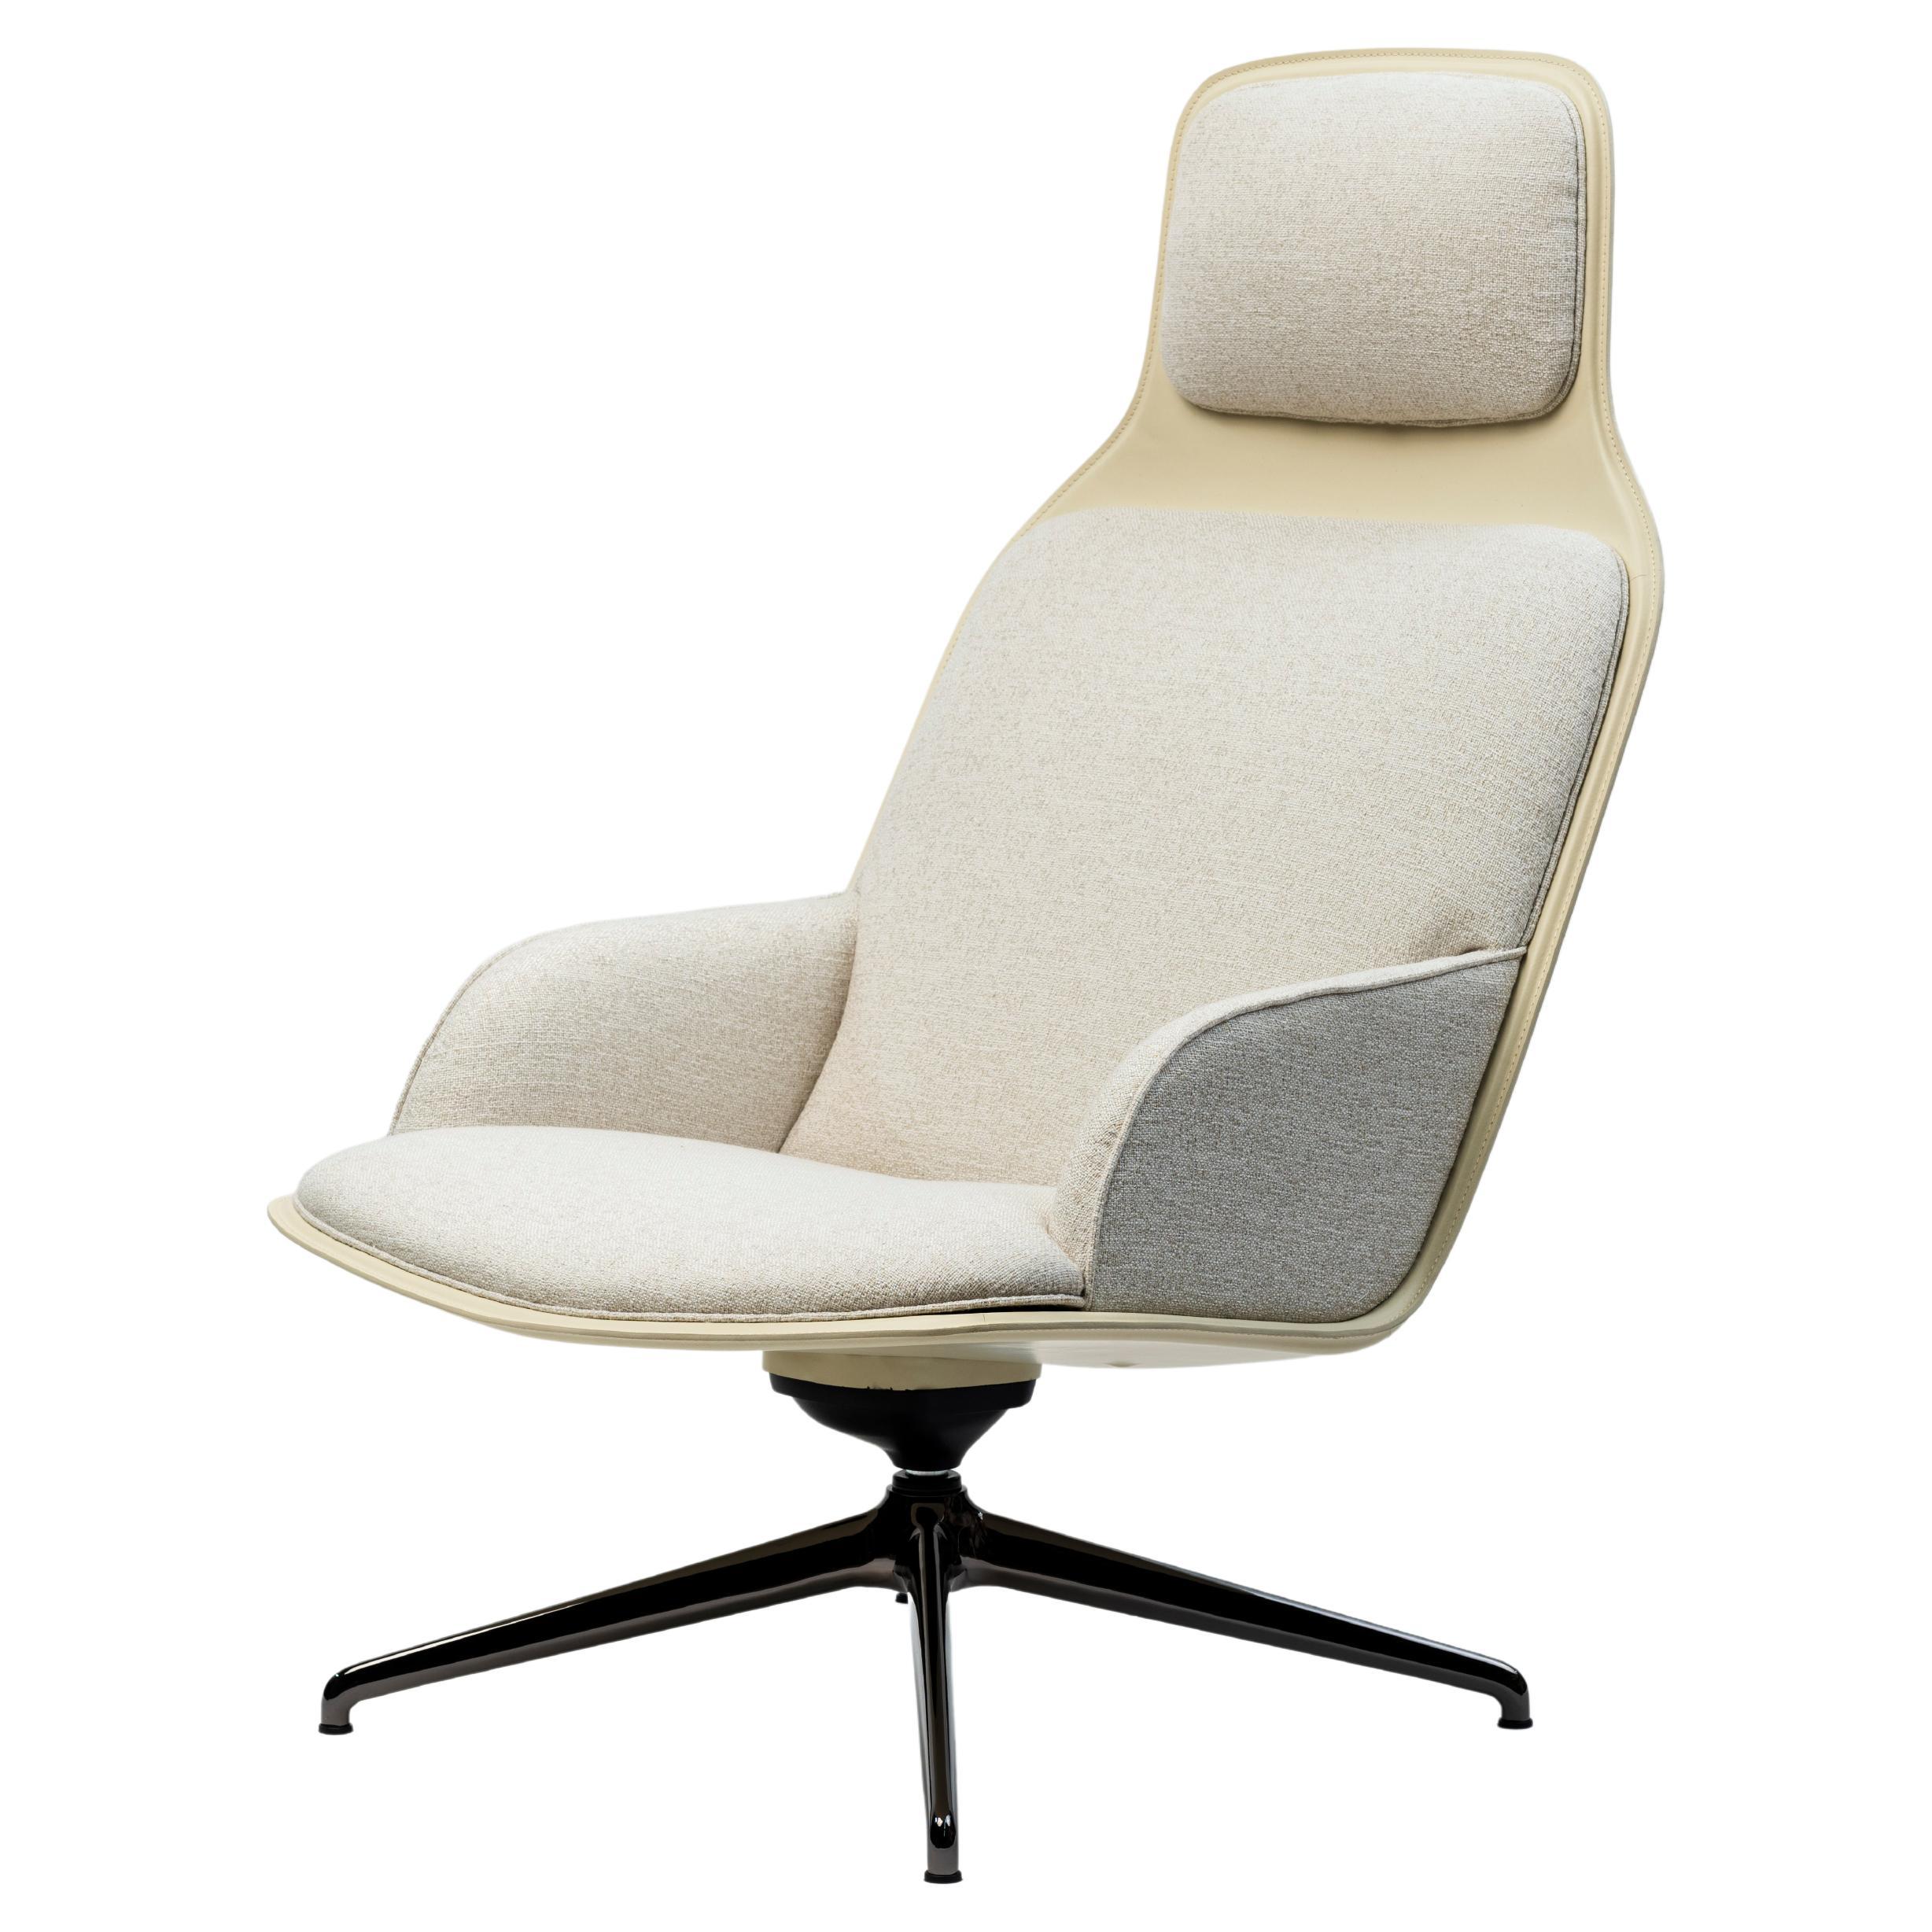 Customizable La Manufacture-Paris Assemblage Armchair Designed by Todd Bracher